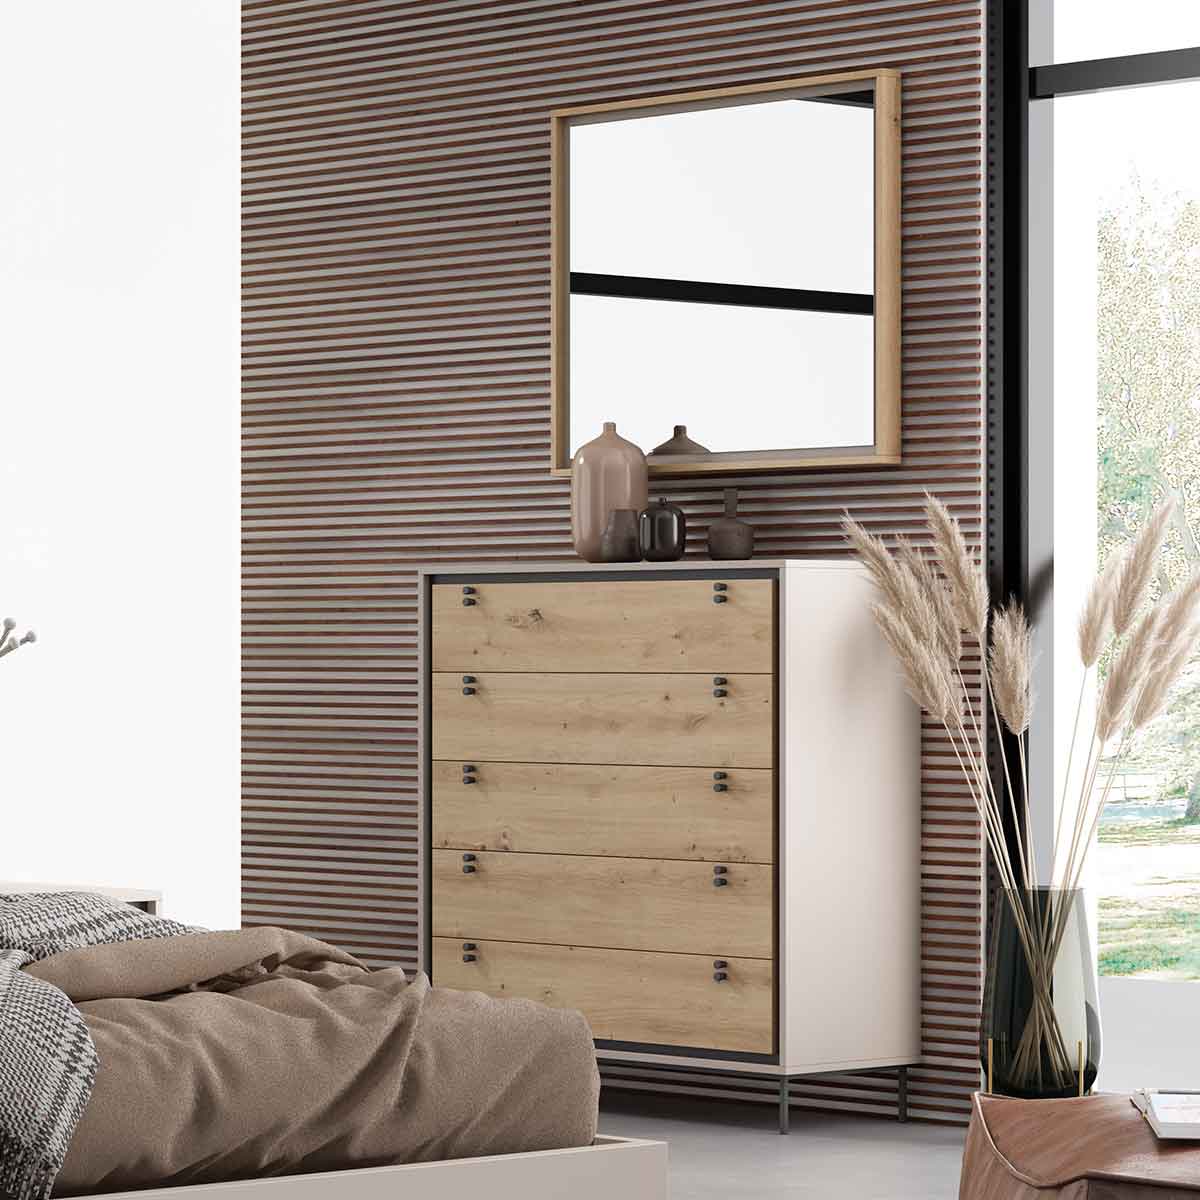 Cómoda dormitorio madera Cómodas de dormitorio | mymobel.com